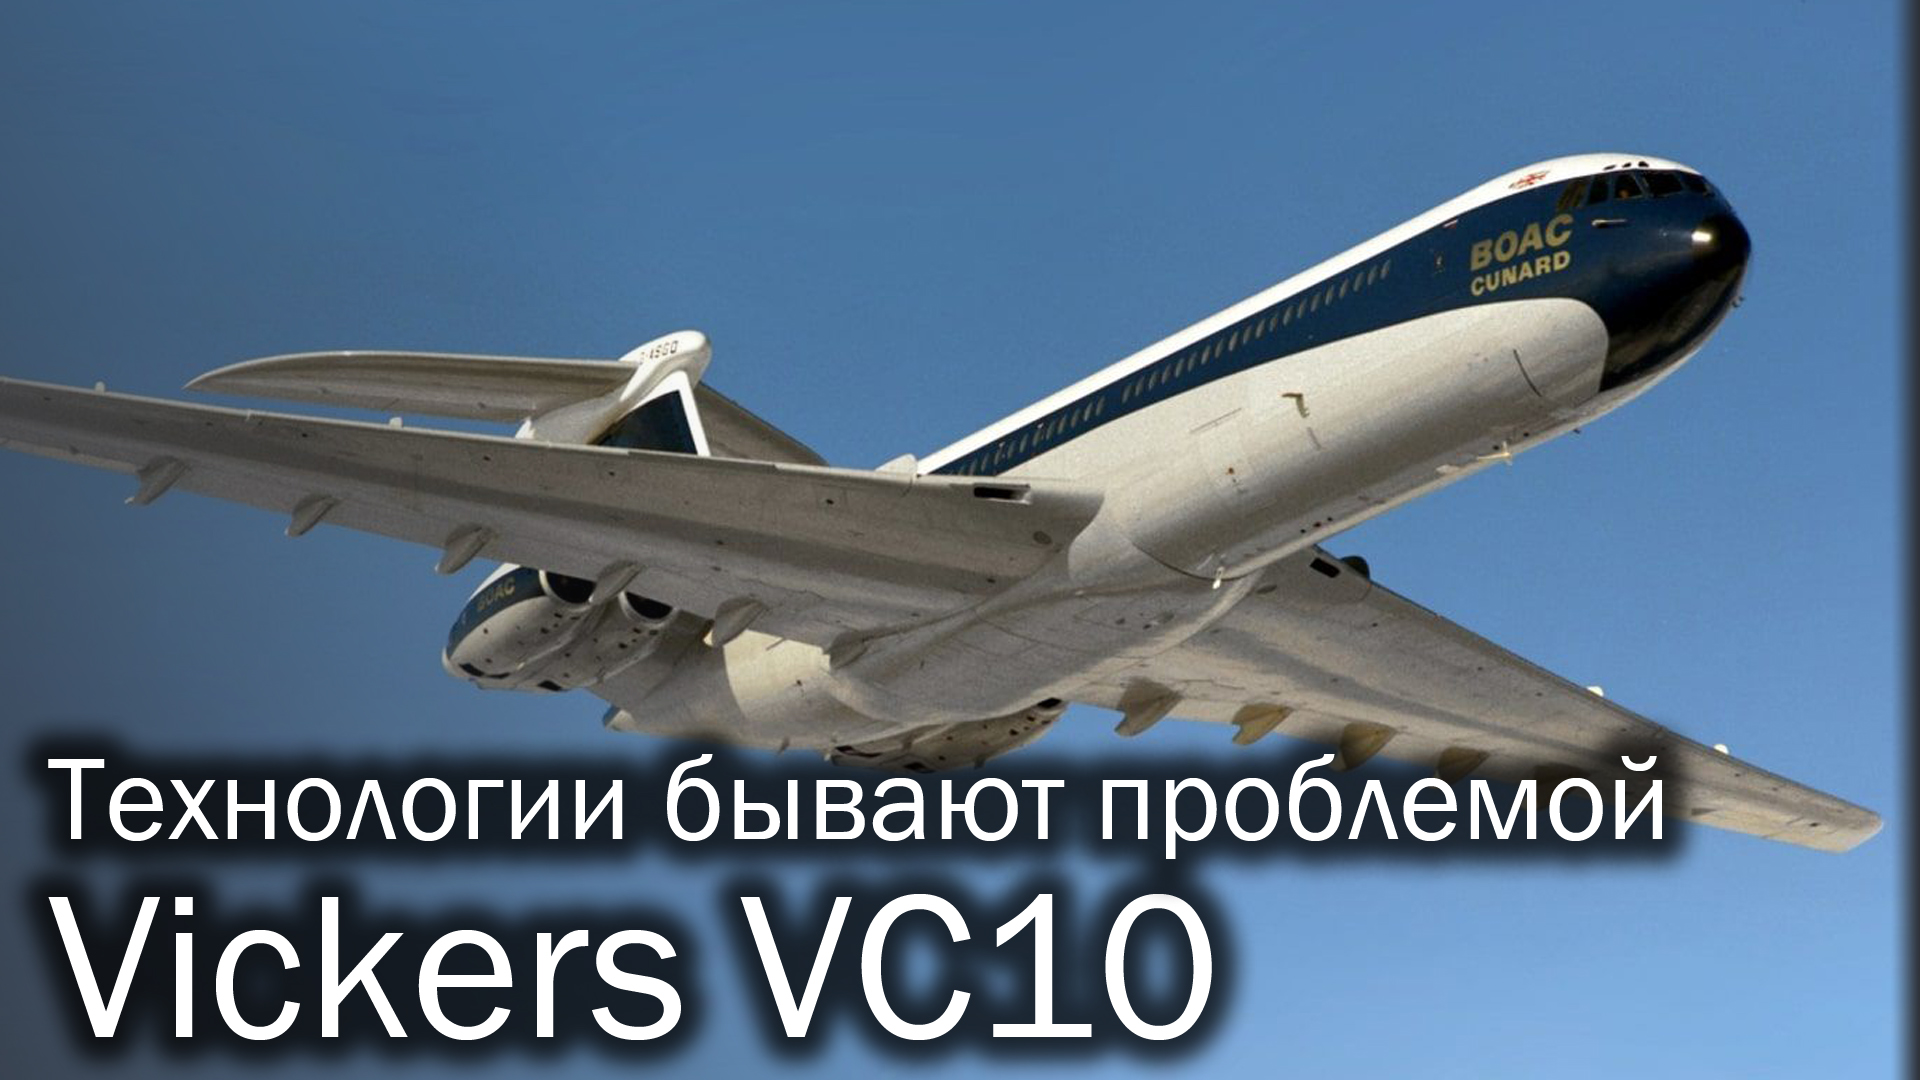 Vickers VC10 - флагман, который не смог